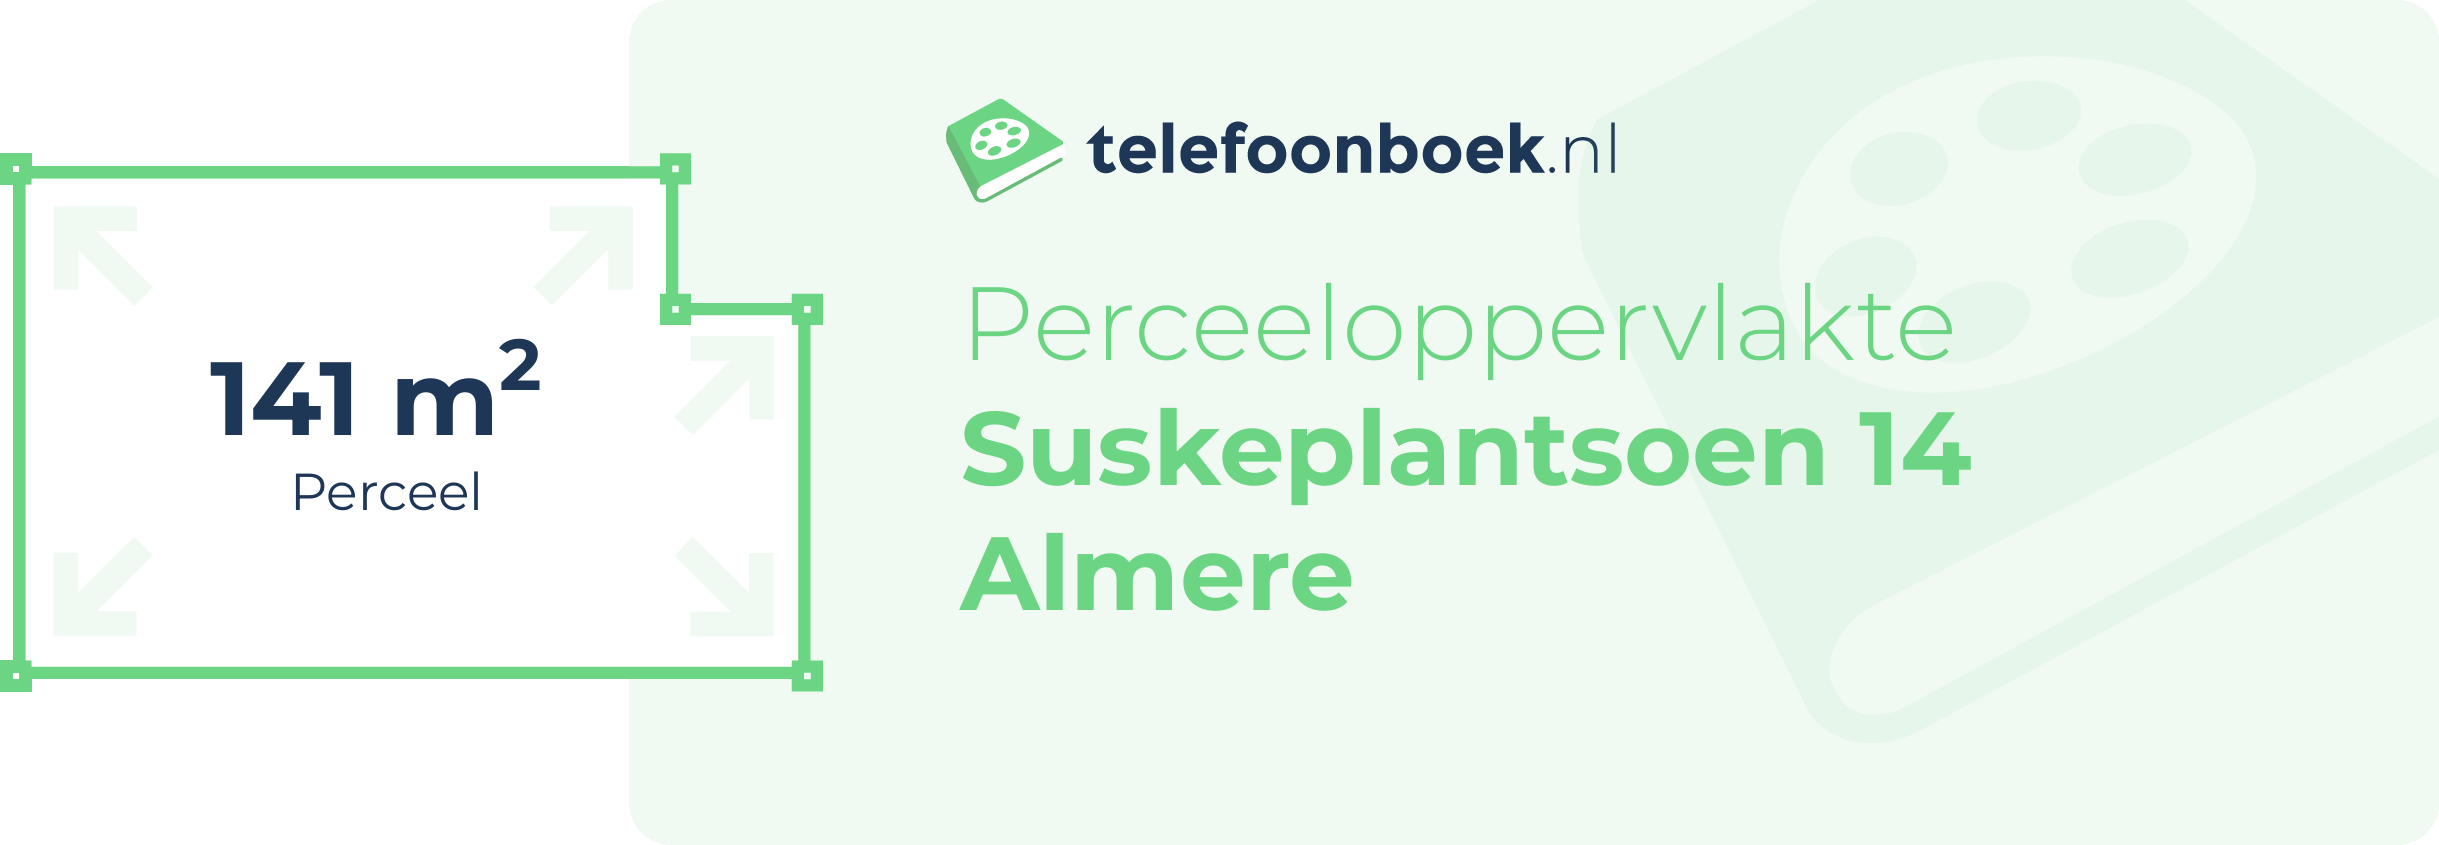 Perceeloppervlakte Suskeplantsoen 14 Almere